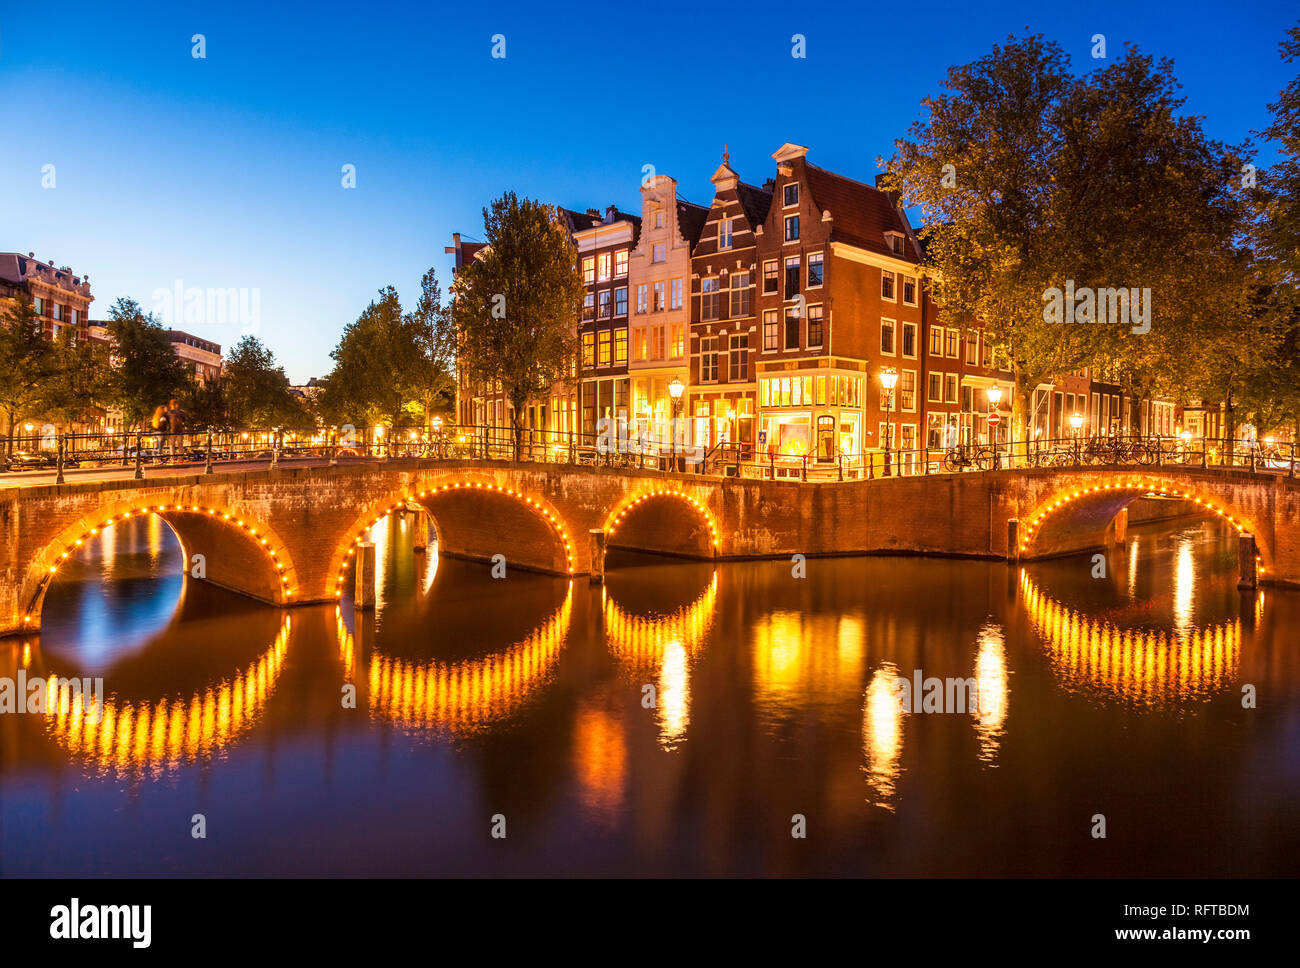 Lichtbrücken und Reflexionen in der Nacht, keizergraht und Leilesgracht Kanäle, Amsterdam, Nordholland, Niederlande, Europa Stockfoto